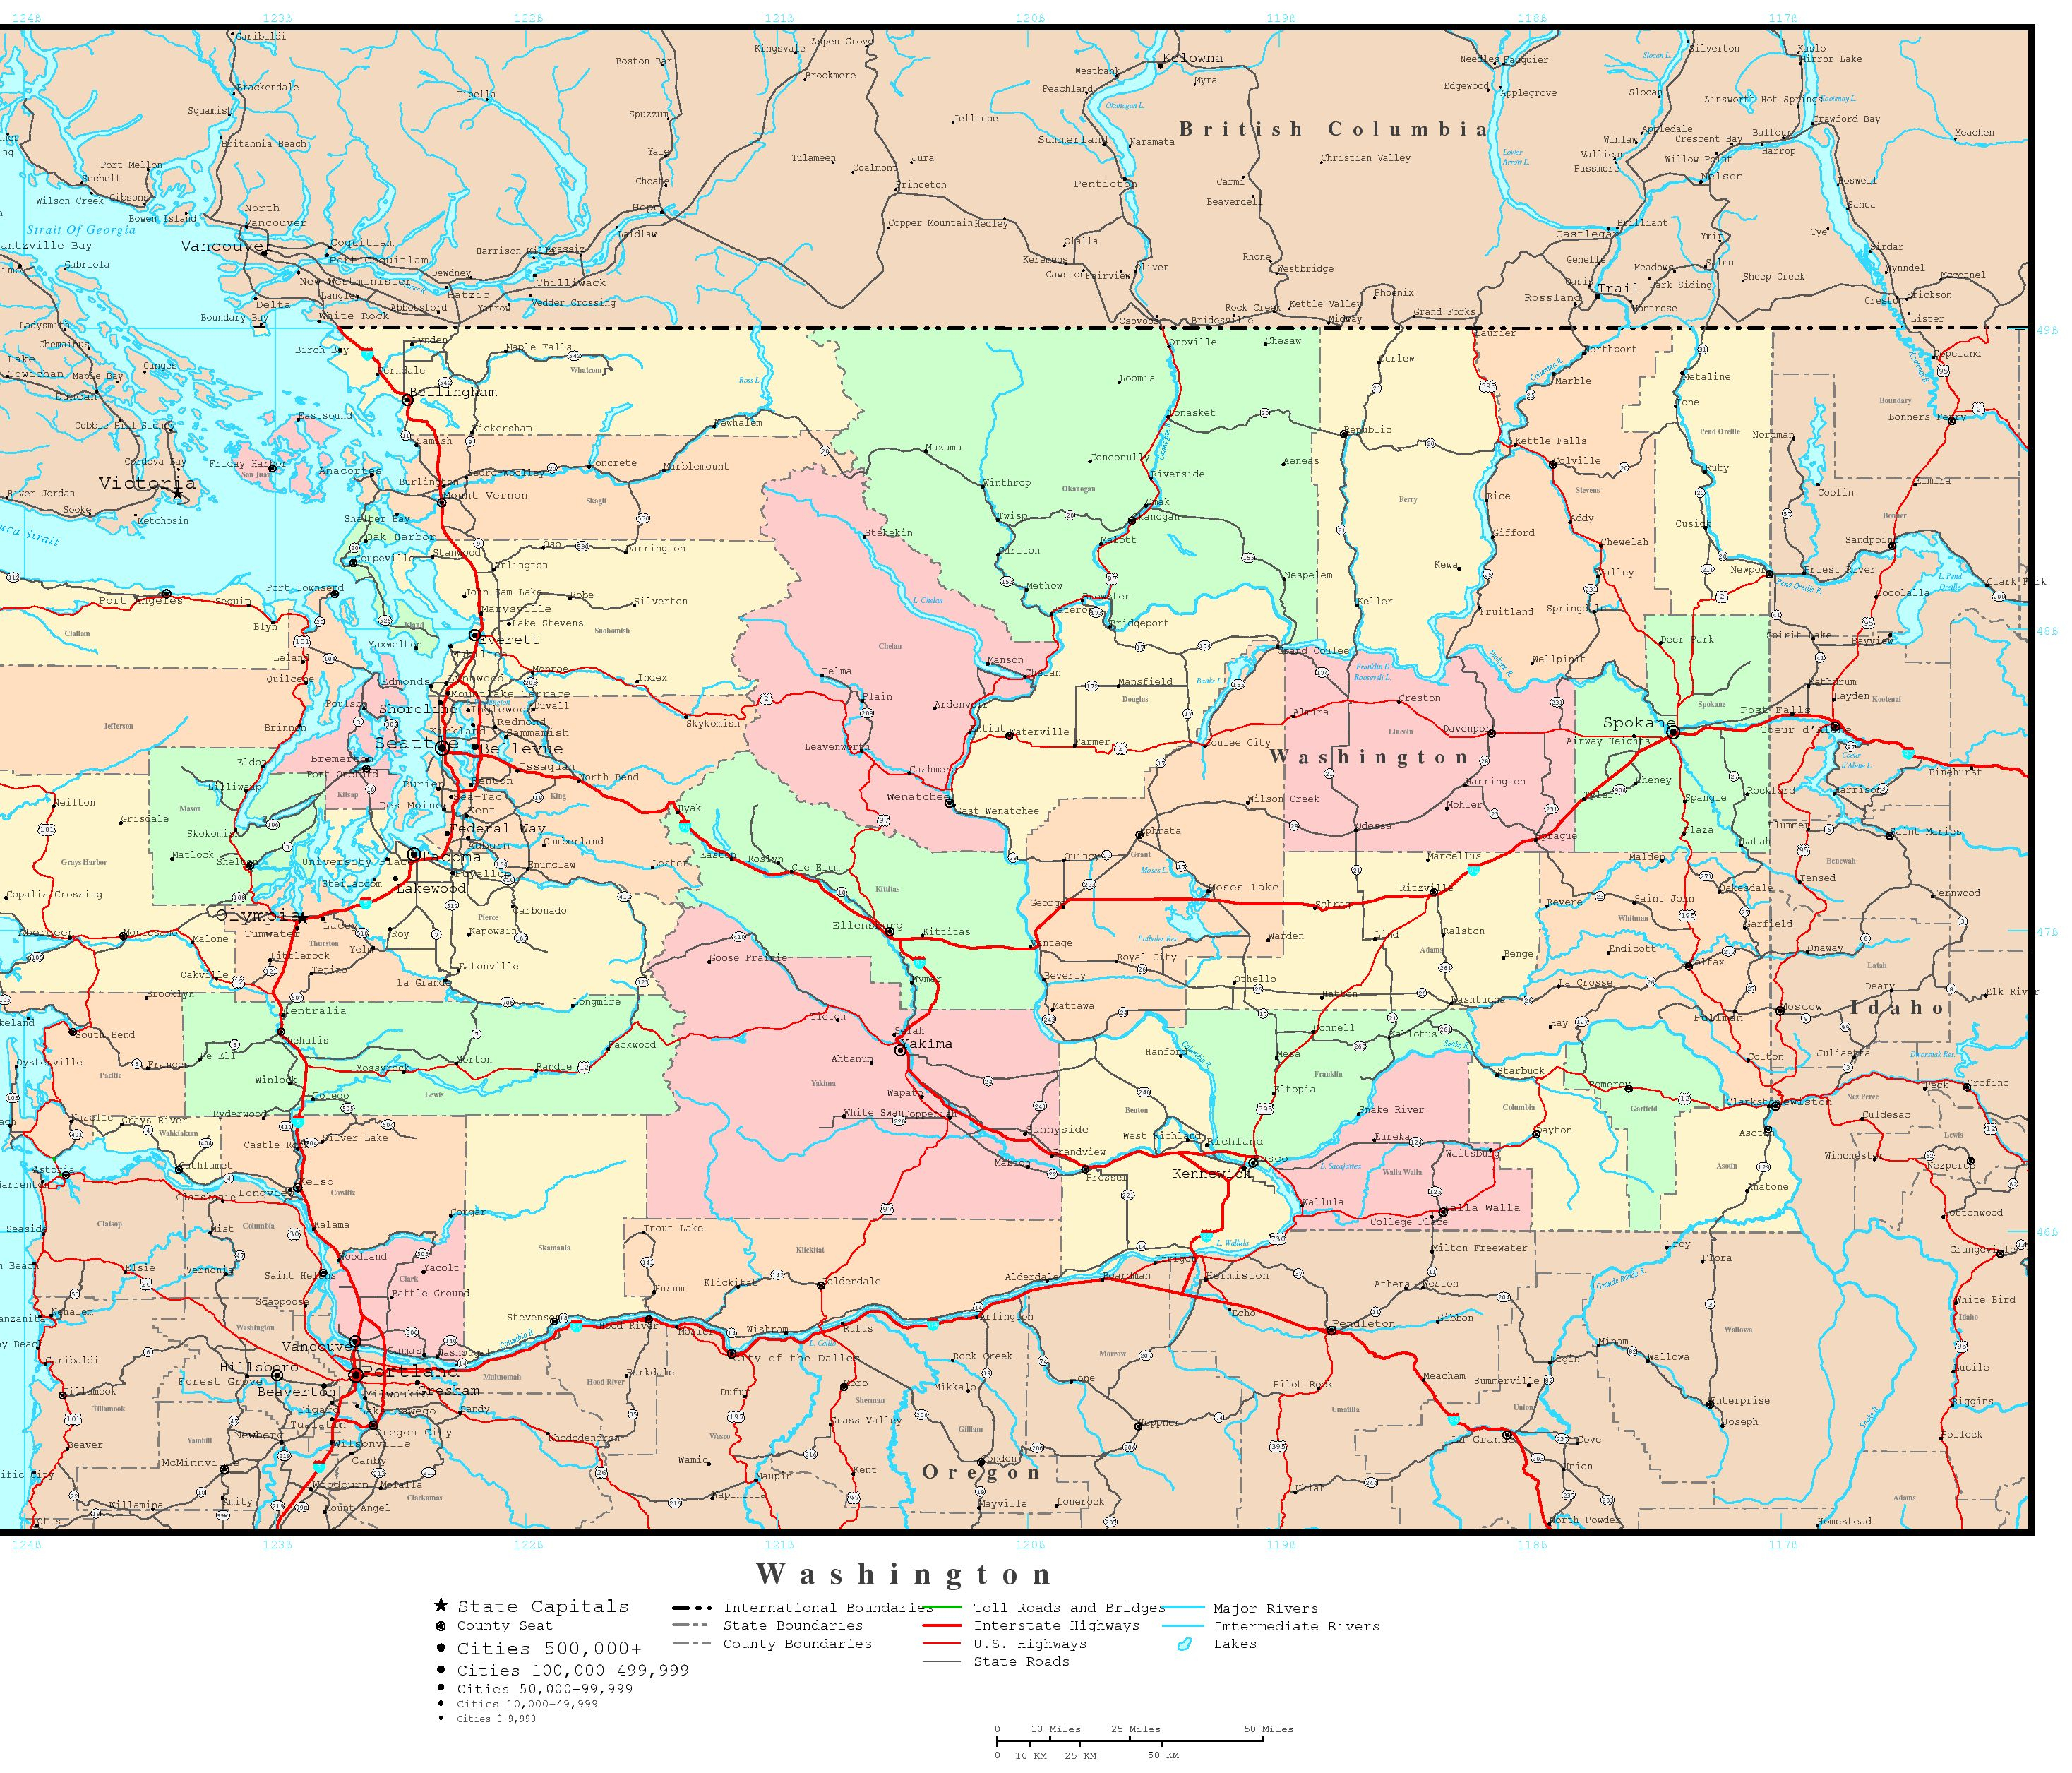 Washington Map - Online Maps Of Washington State - Free Printable Map Of Washington State